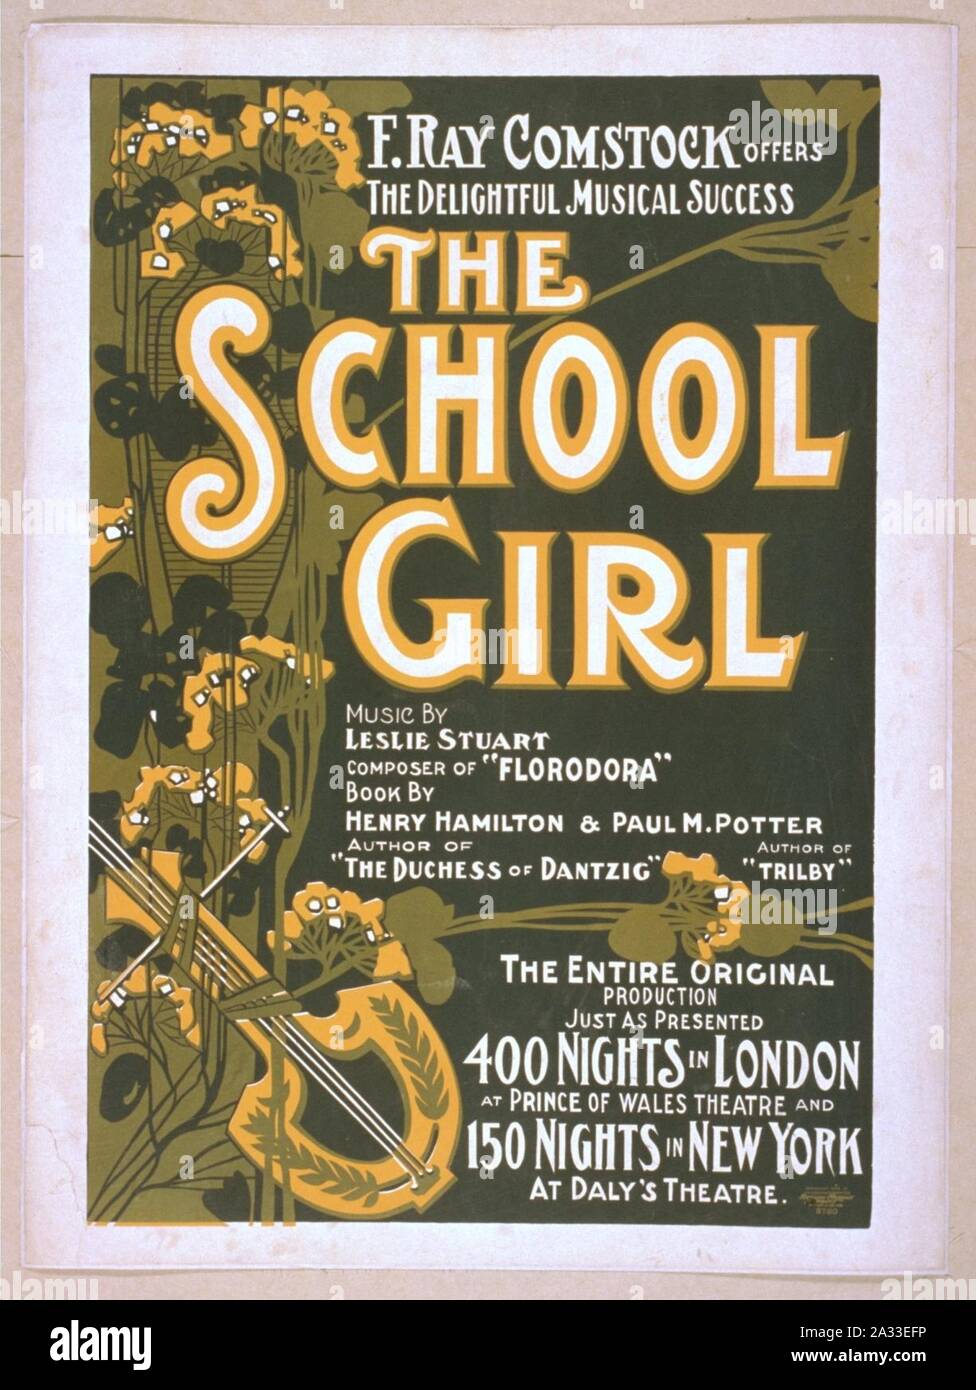 F. Ray Comstock offre la deliziosa successo musicale, la ragazza della scuola di musica di Leslie Stuart, compositore di 'Florodora' ; libro da Henry Hamilton, autore di "Duchessa di Dantzig' & Paul M. Foto Stock